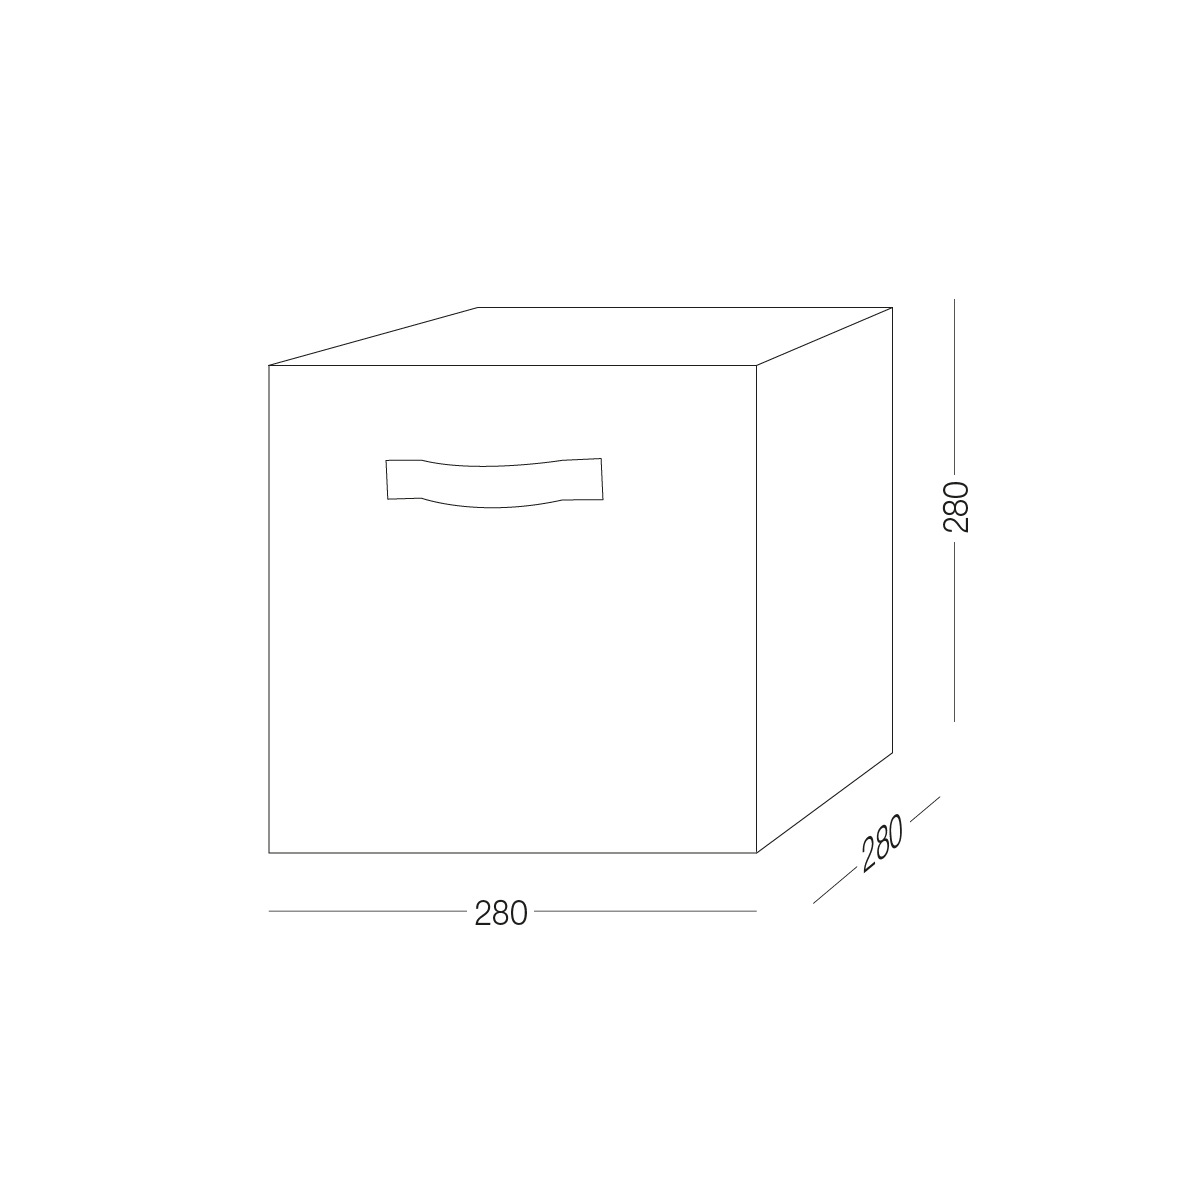 Ящик для зберігання МВМ My Home текстильний, 280x280x280 мм, сірий (TH-08 GRAY) - фото 9